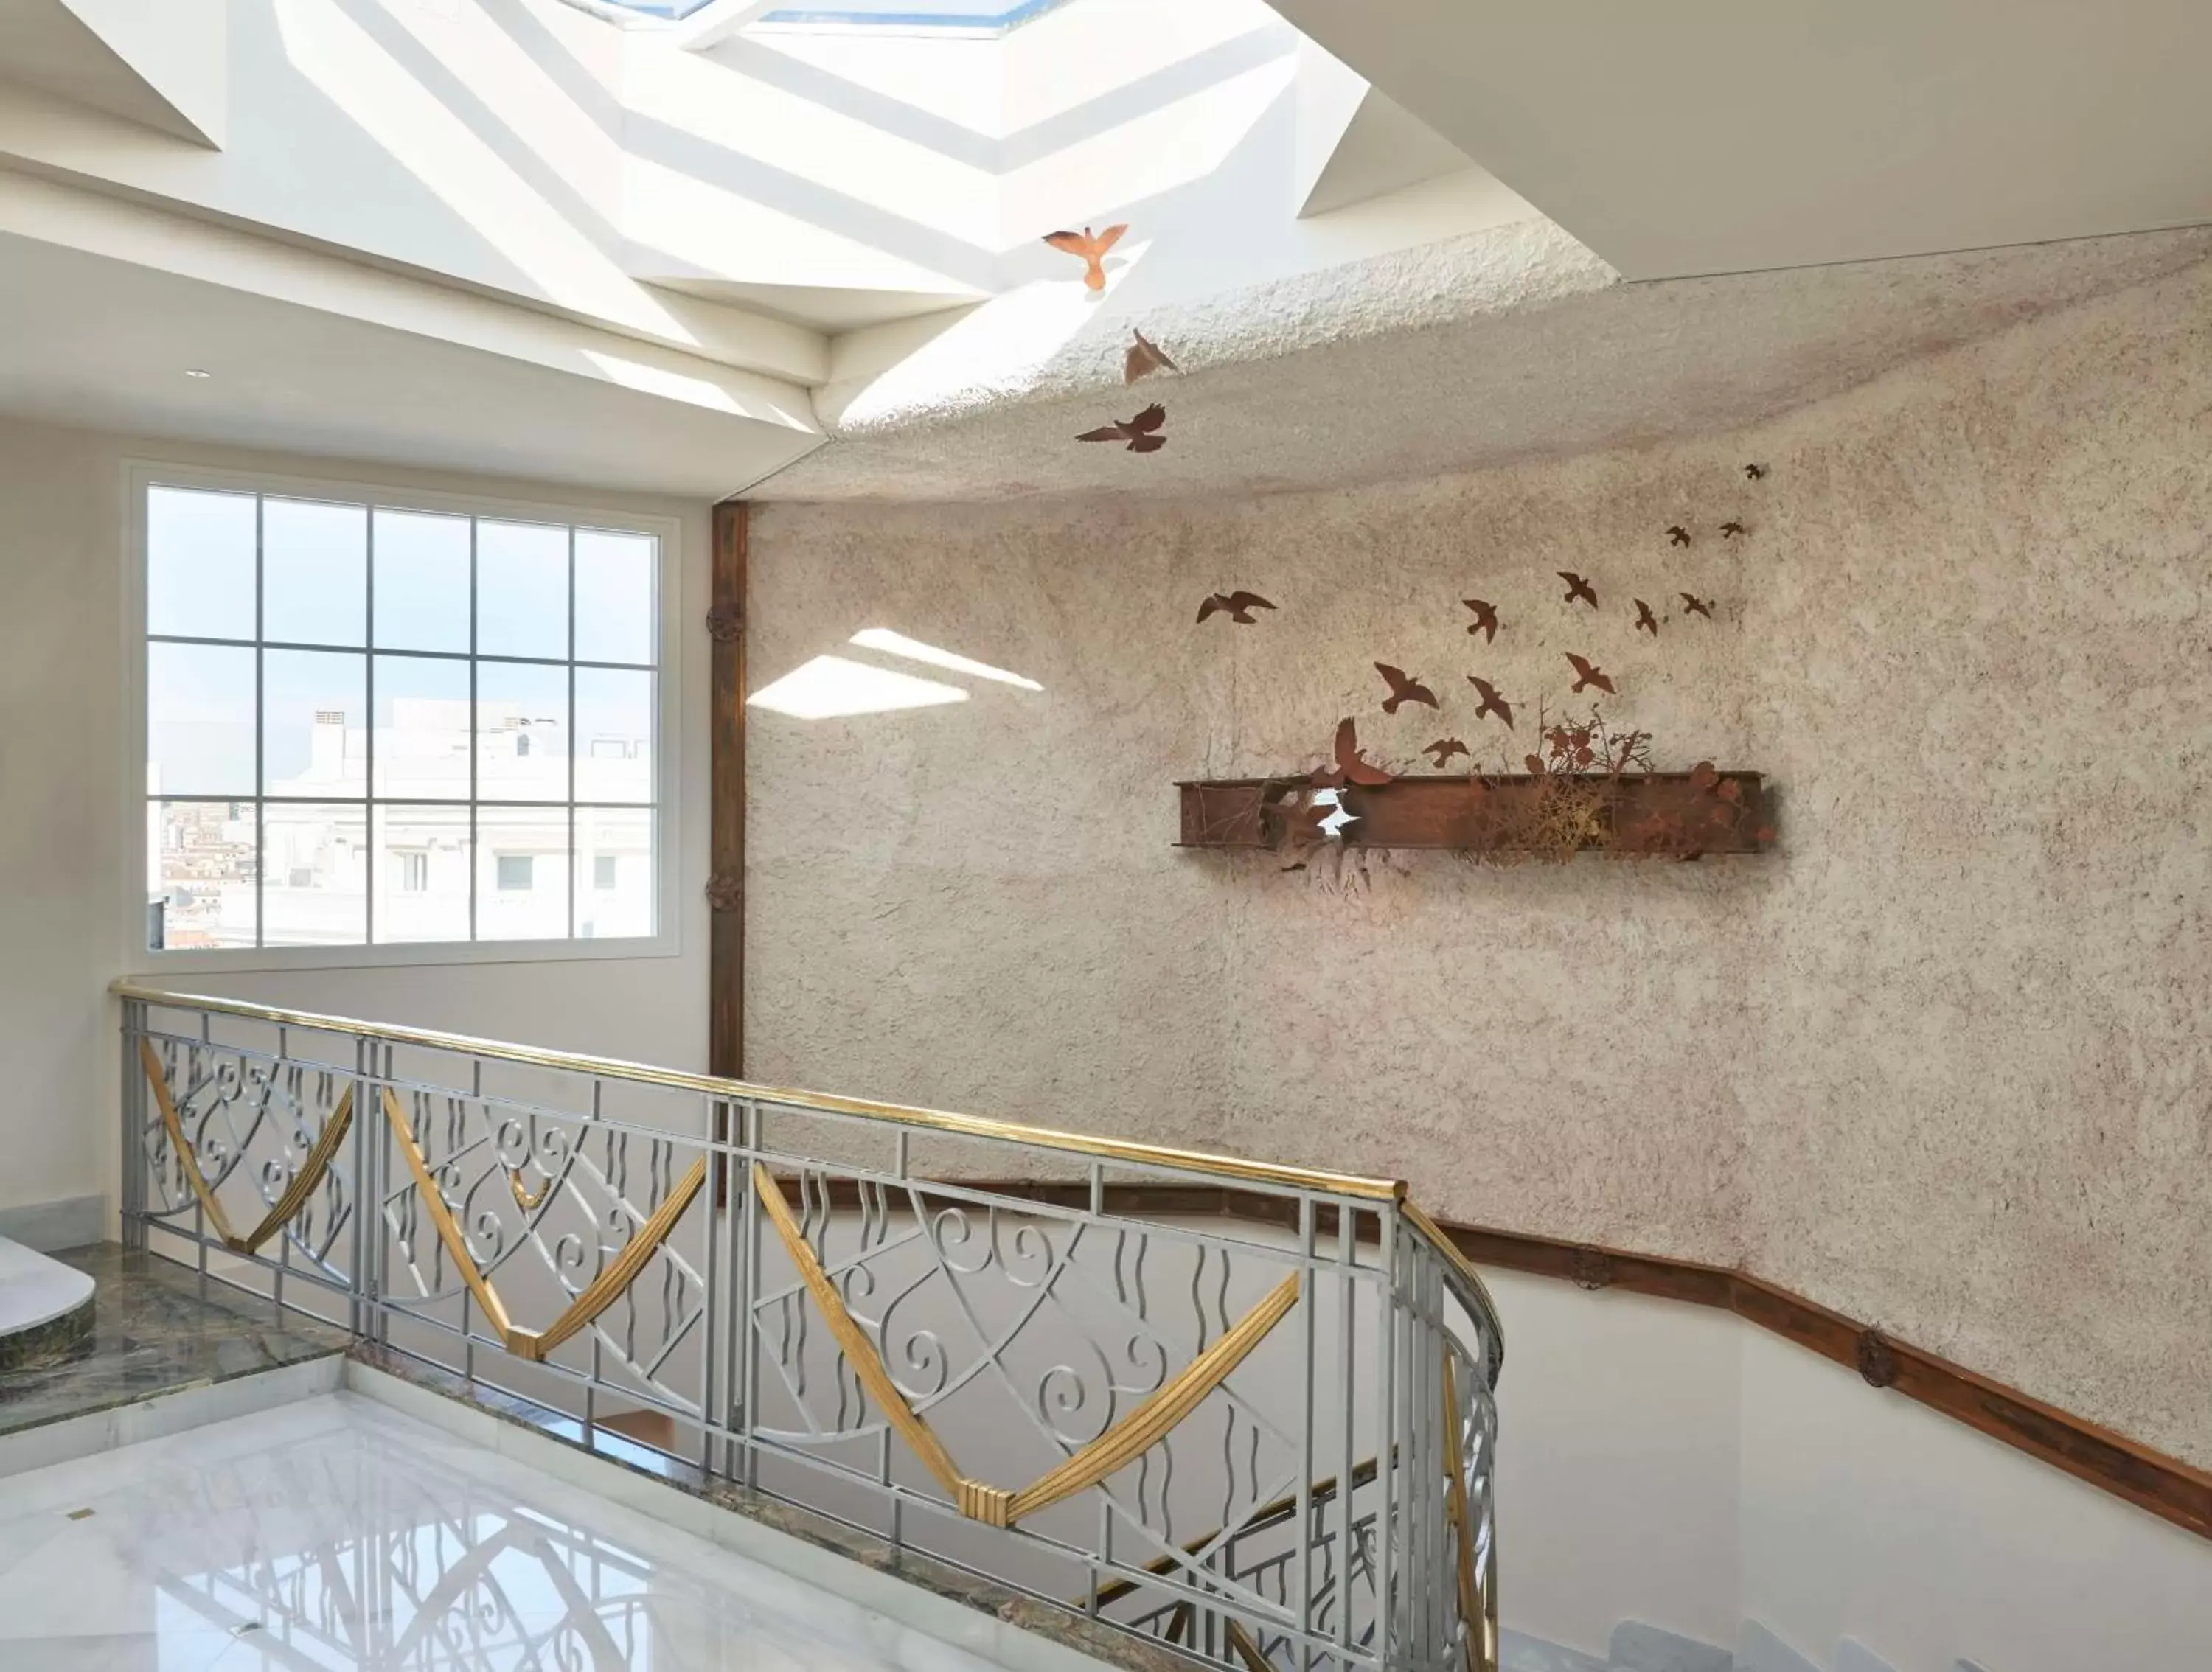 Lobby or reception in Hyatt Centric Gran Via Madrid